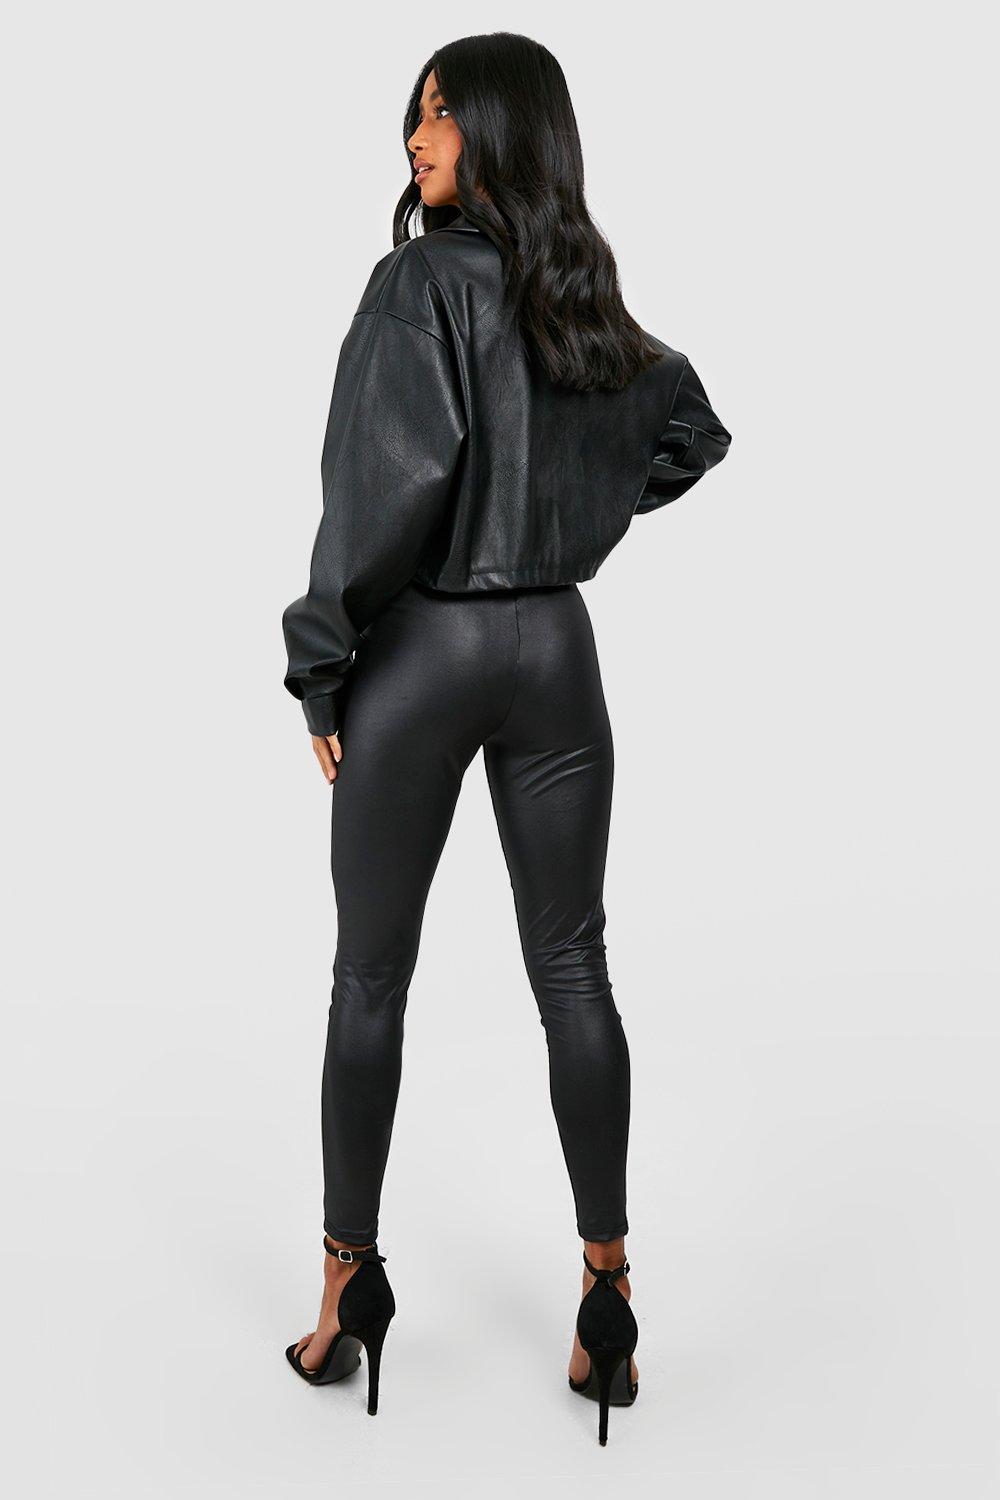 Black Shiny Textured Leggings Online Shopping